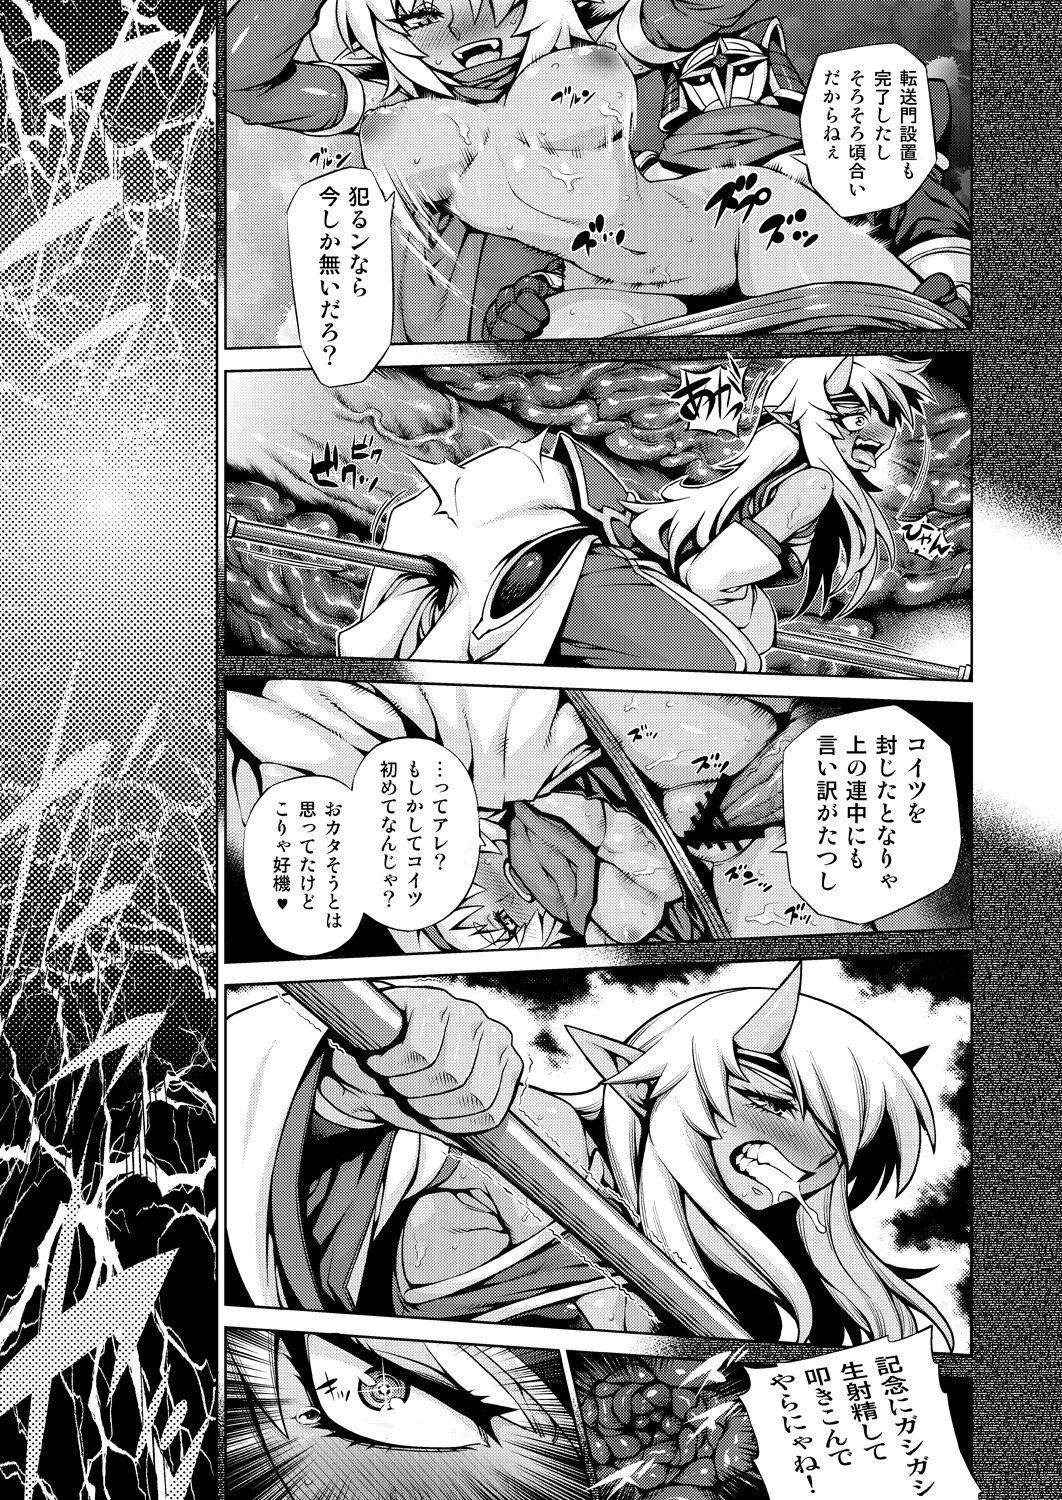 Blonde Magatchan no jigen chōyaku dai sakusen purasu - Shinrabansho Francais - Page 10